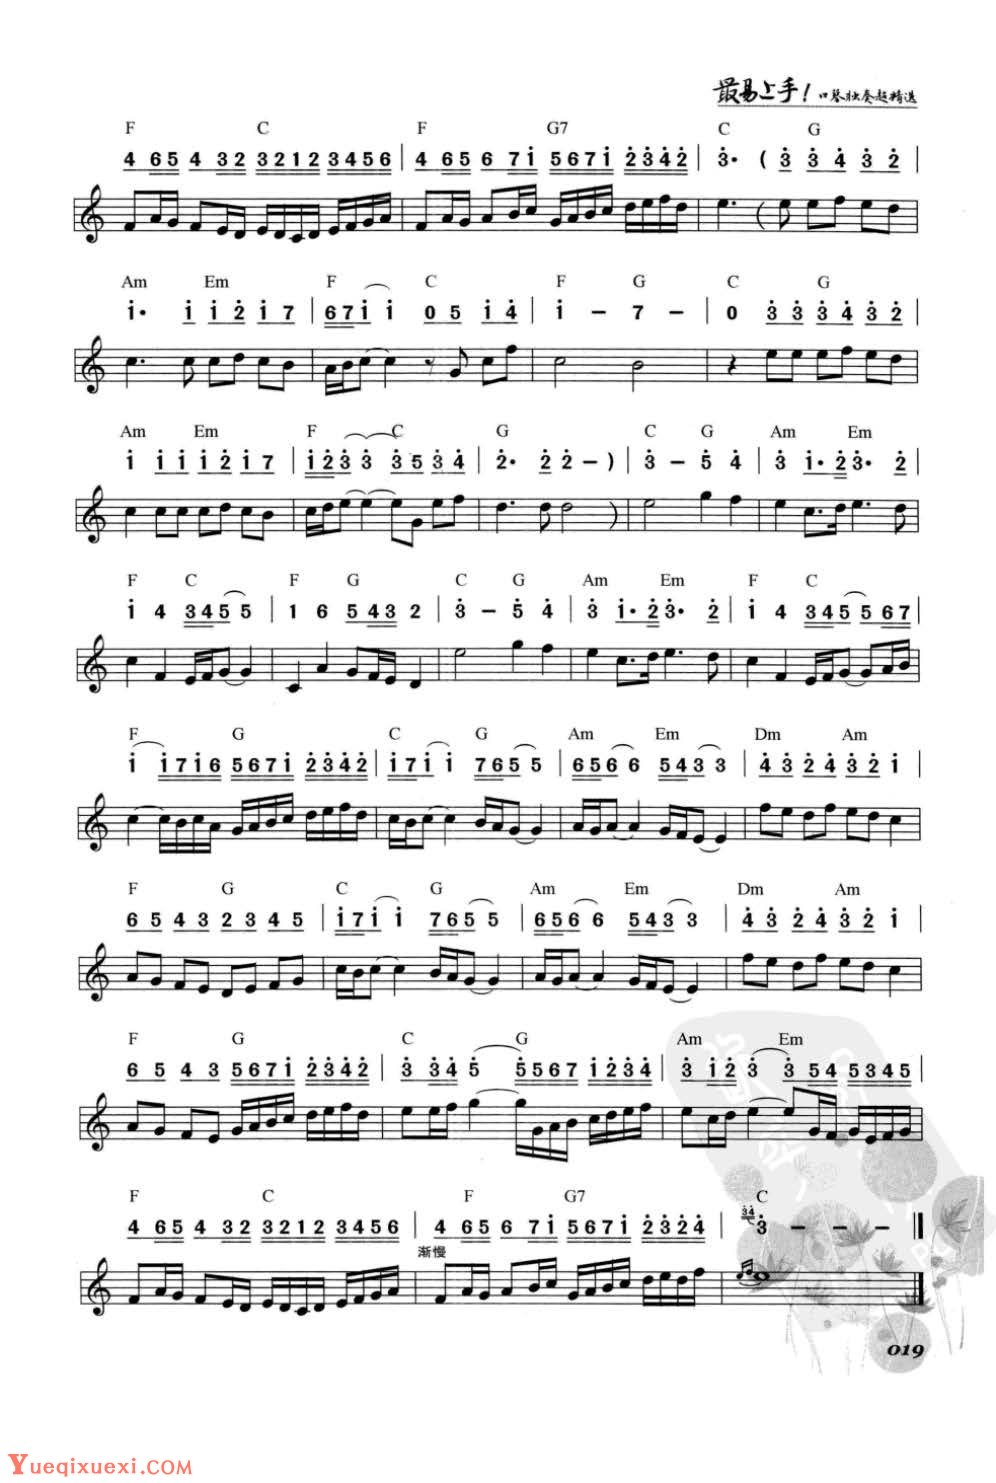 口琴古典名曲《卡农》简谱与五线谱对照